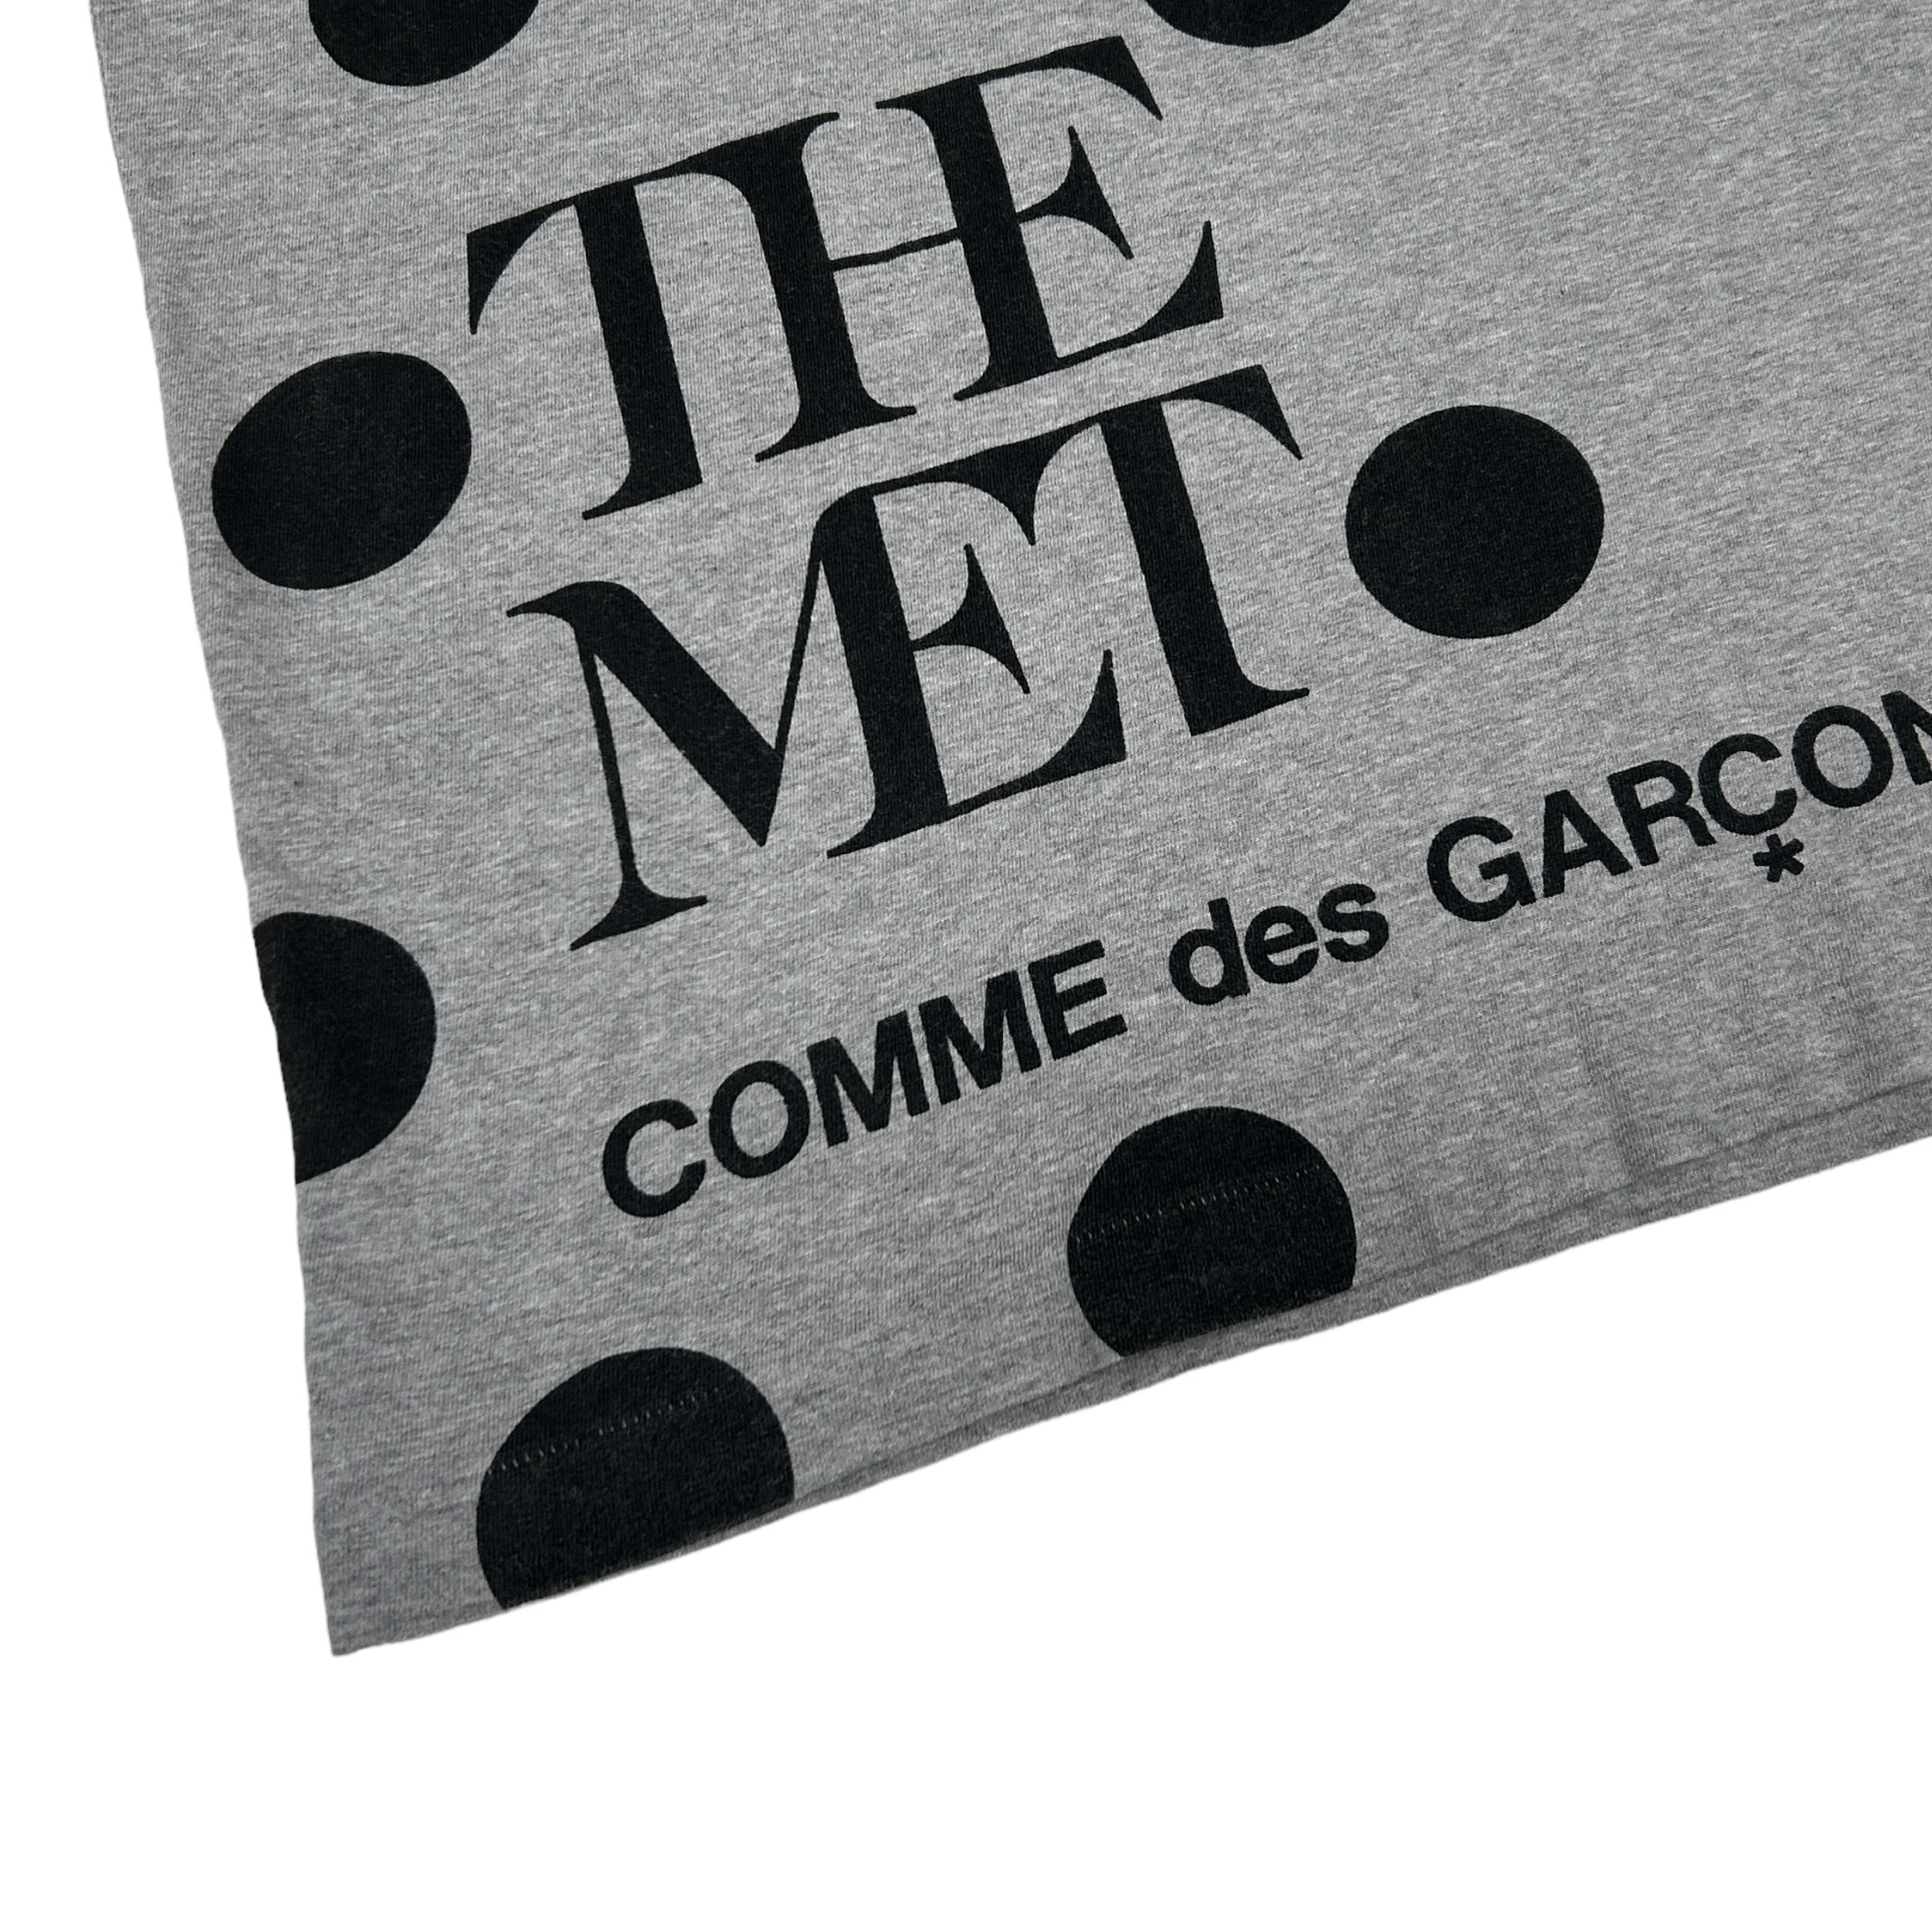 COMME DES GARCONS "THE MET 2016" TEE